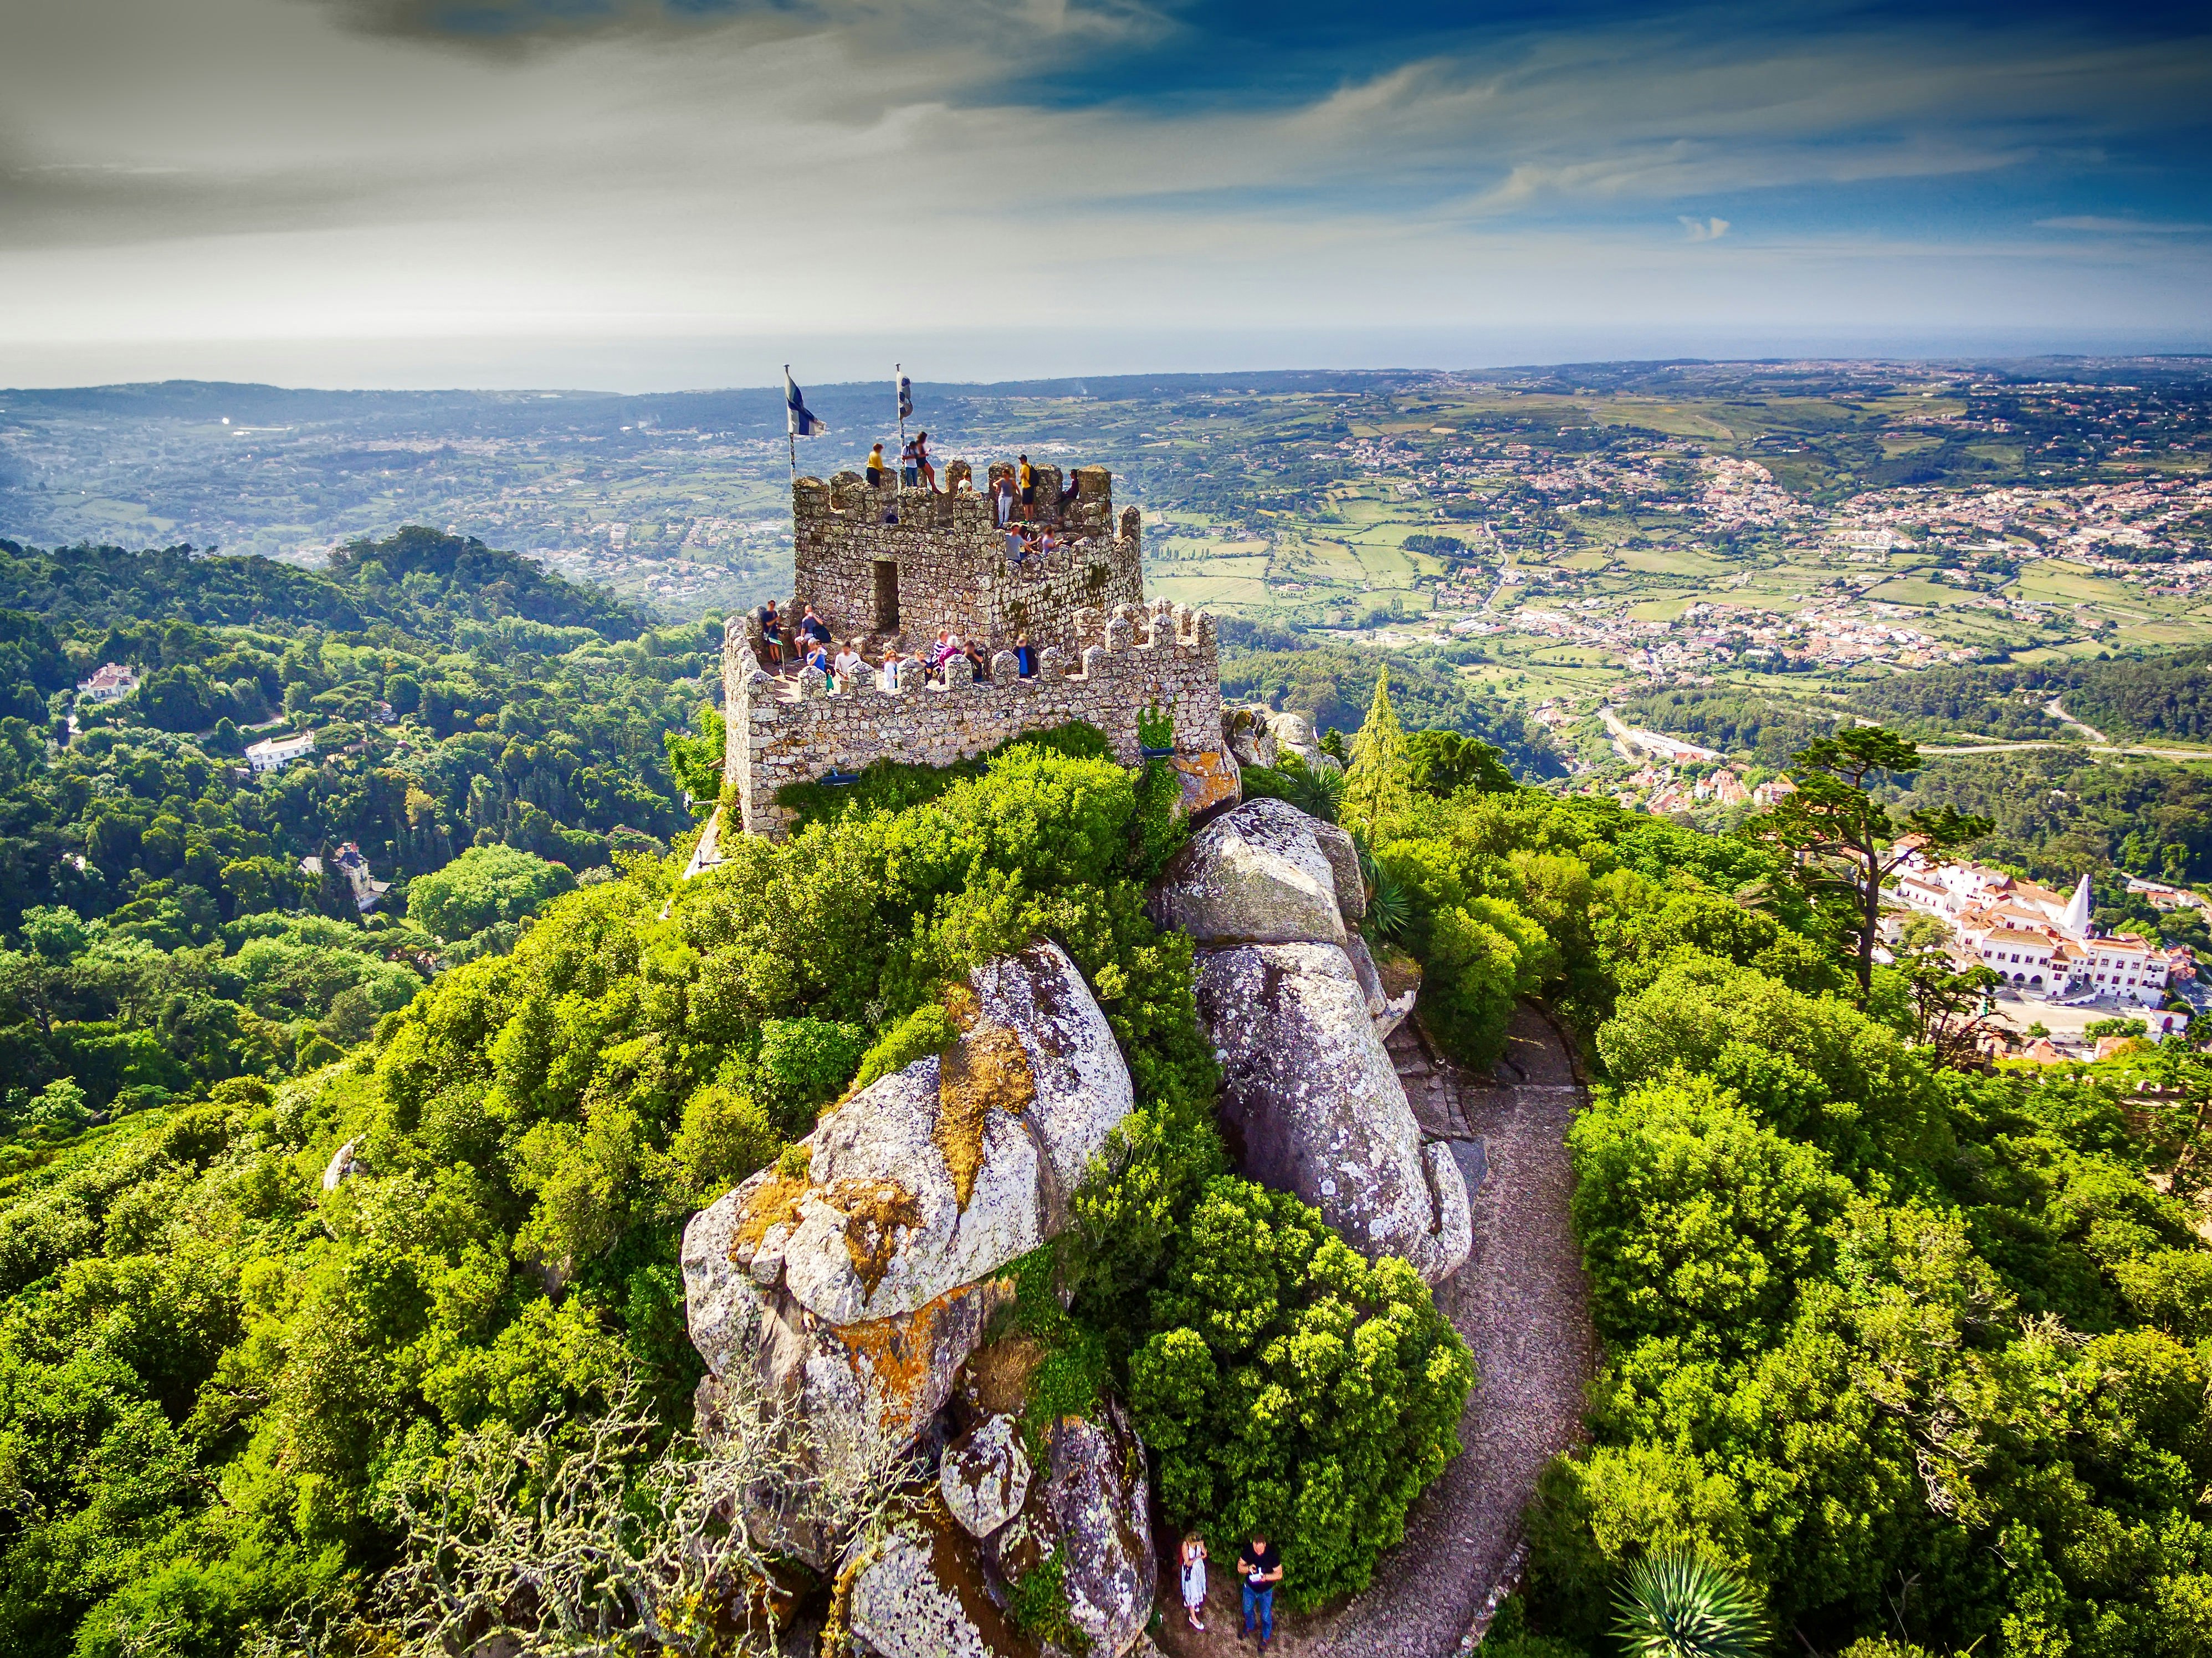 Flygfoto över Castelo dos Mouros (morernas slott) i Sintra;  det antika slottet ligger på toppen av en grönskande sluttning, och människor står i tornet och tittar ut över dalen nedanför.